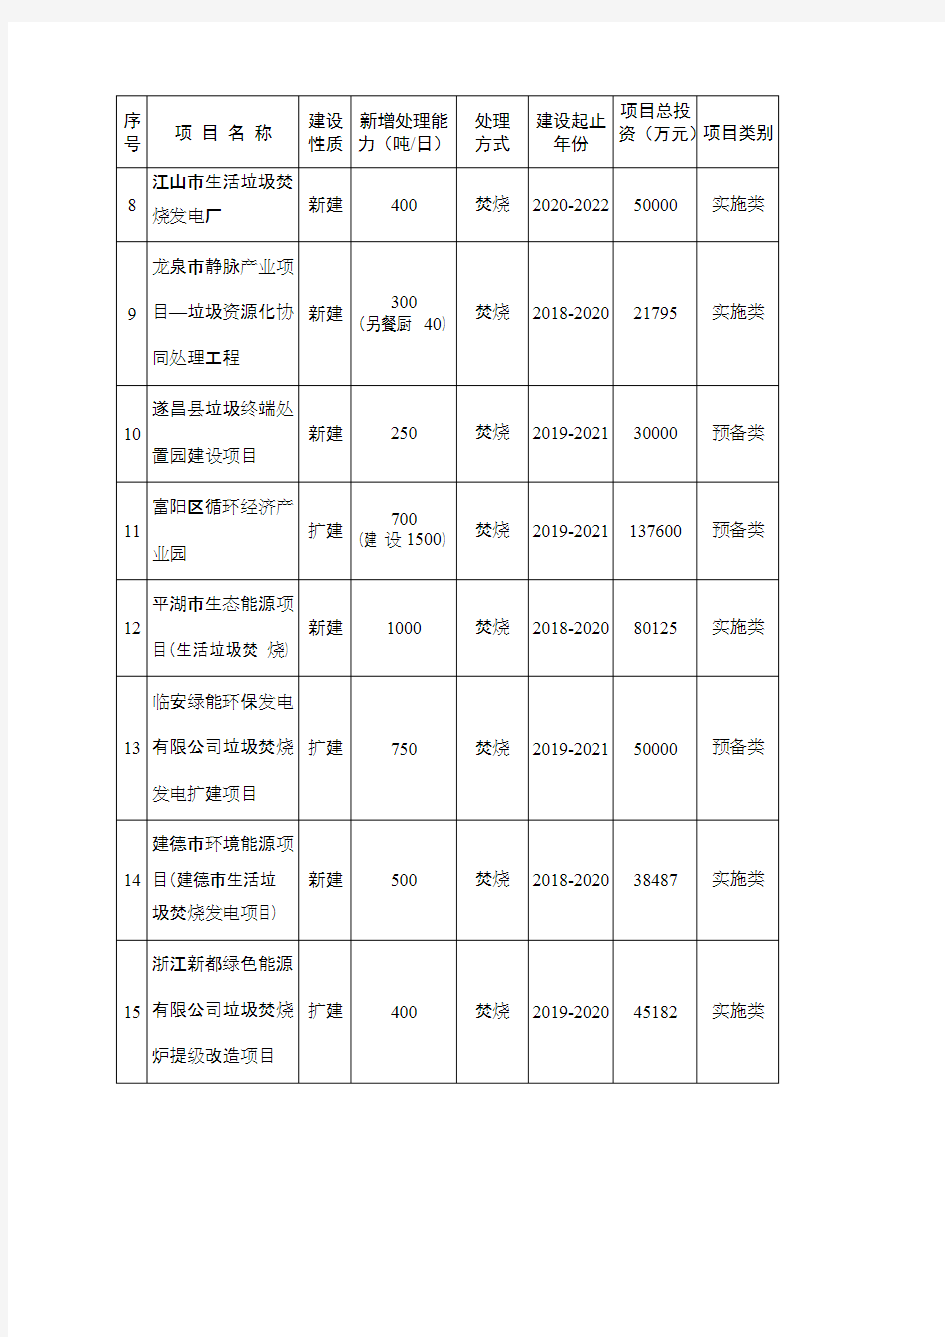 浙江省城镇生活垃圾无害化处理设施建设十三五规划项目调整表